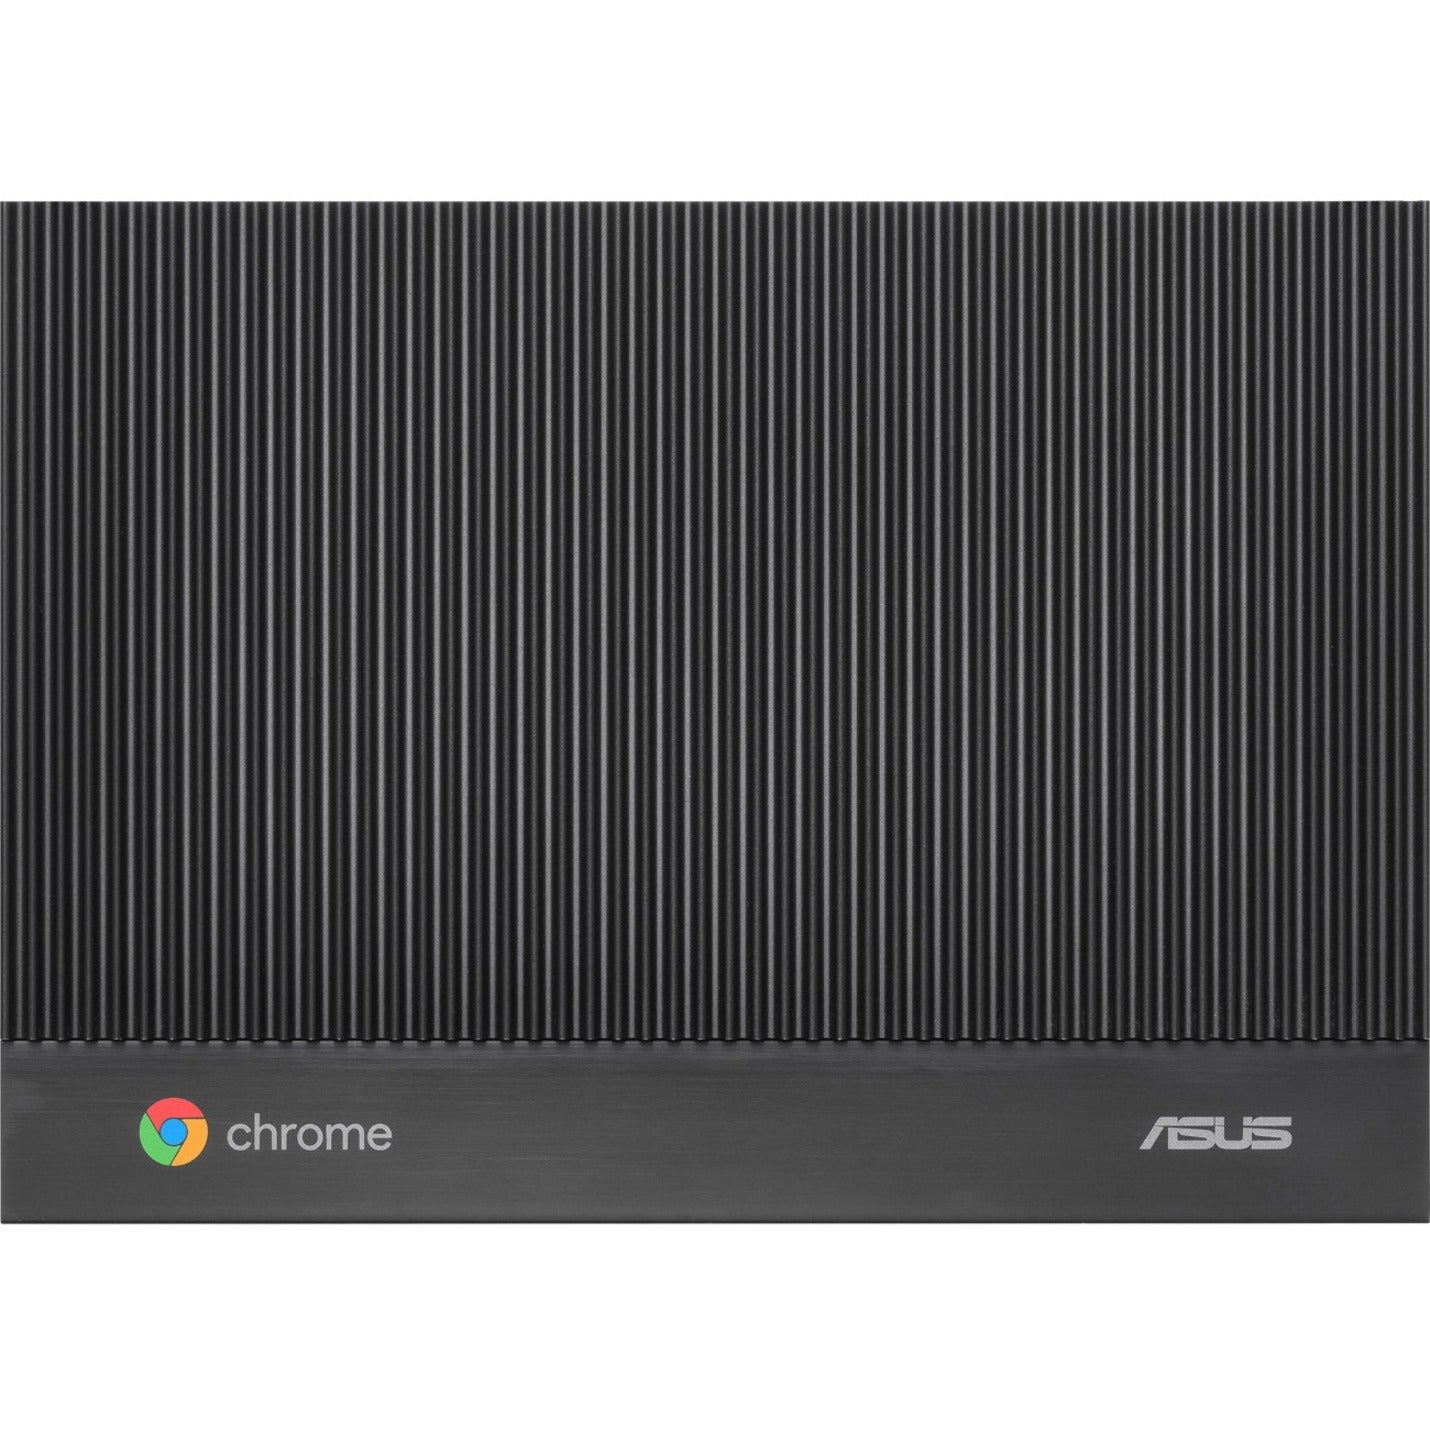 Asus Chromebox CHROMEBOX4-F7070U Desktop Computer - Intel Core i7 10th Gen i7-10510U - 16 GB RAM DDR4 SDRAM - 256 GB SSD - Gun Metal